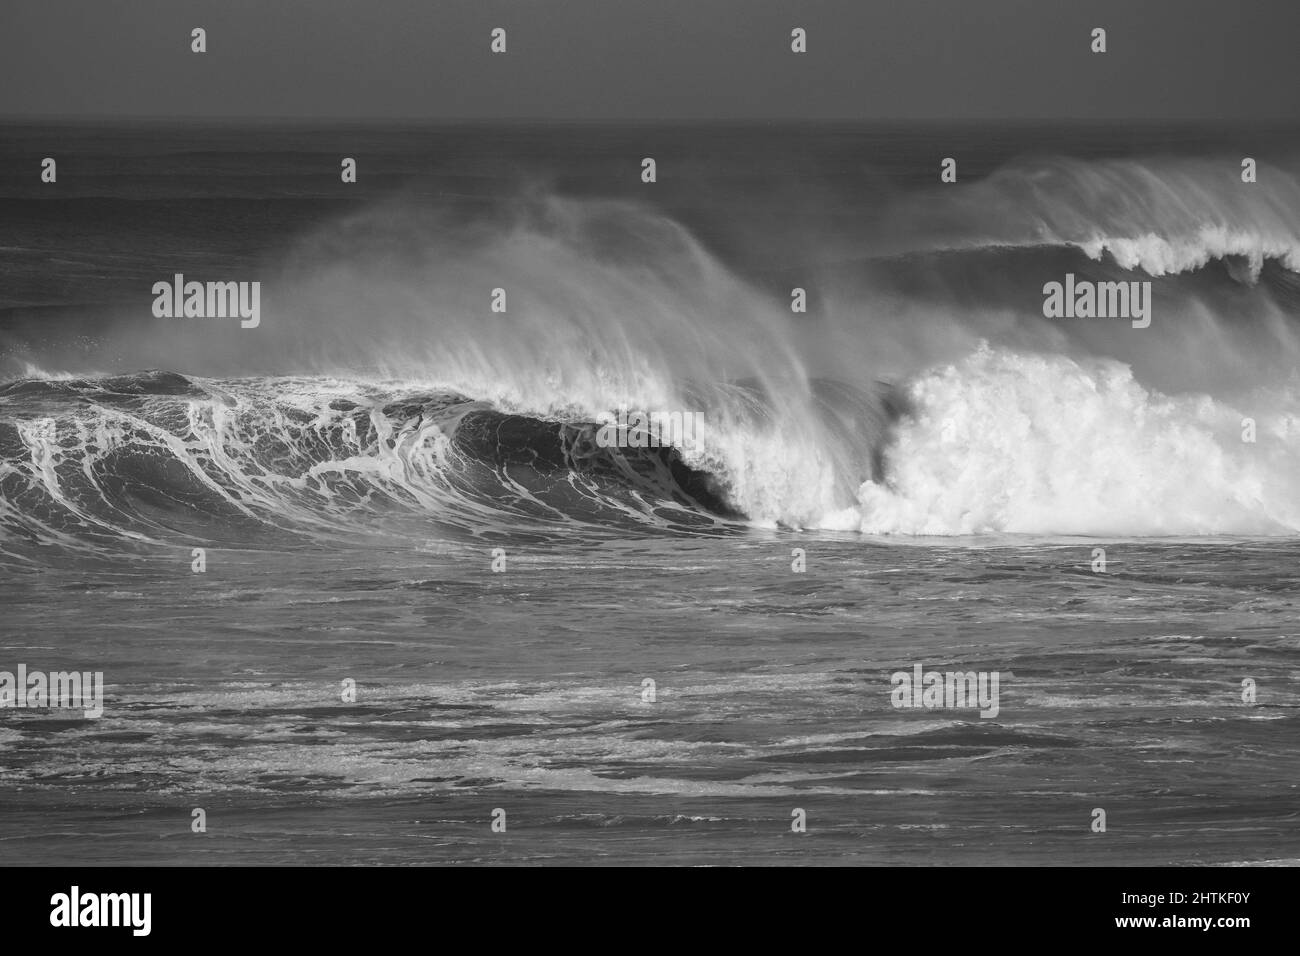 Tube wave Banque d'images noir et blanc - Page 2 - Alamy